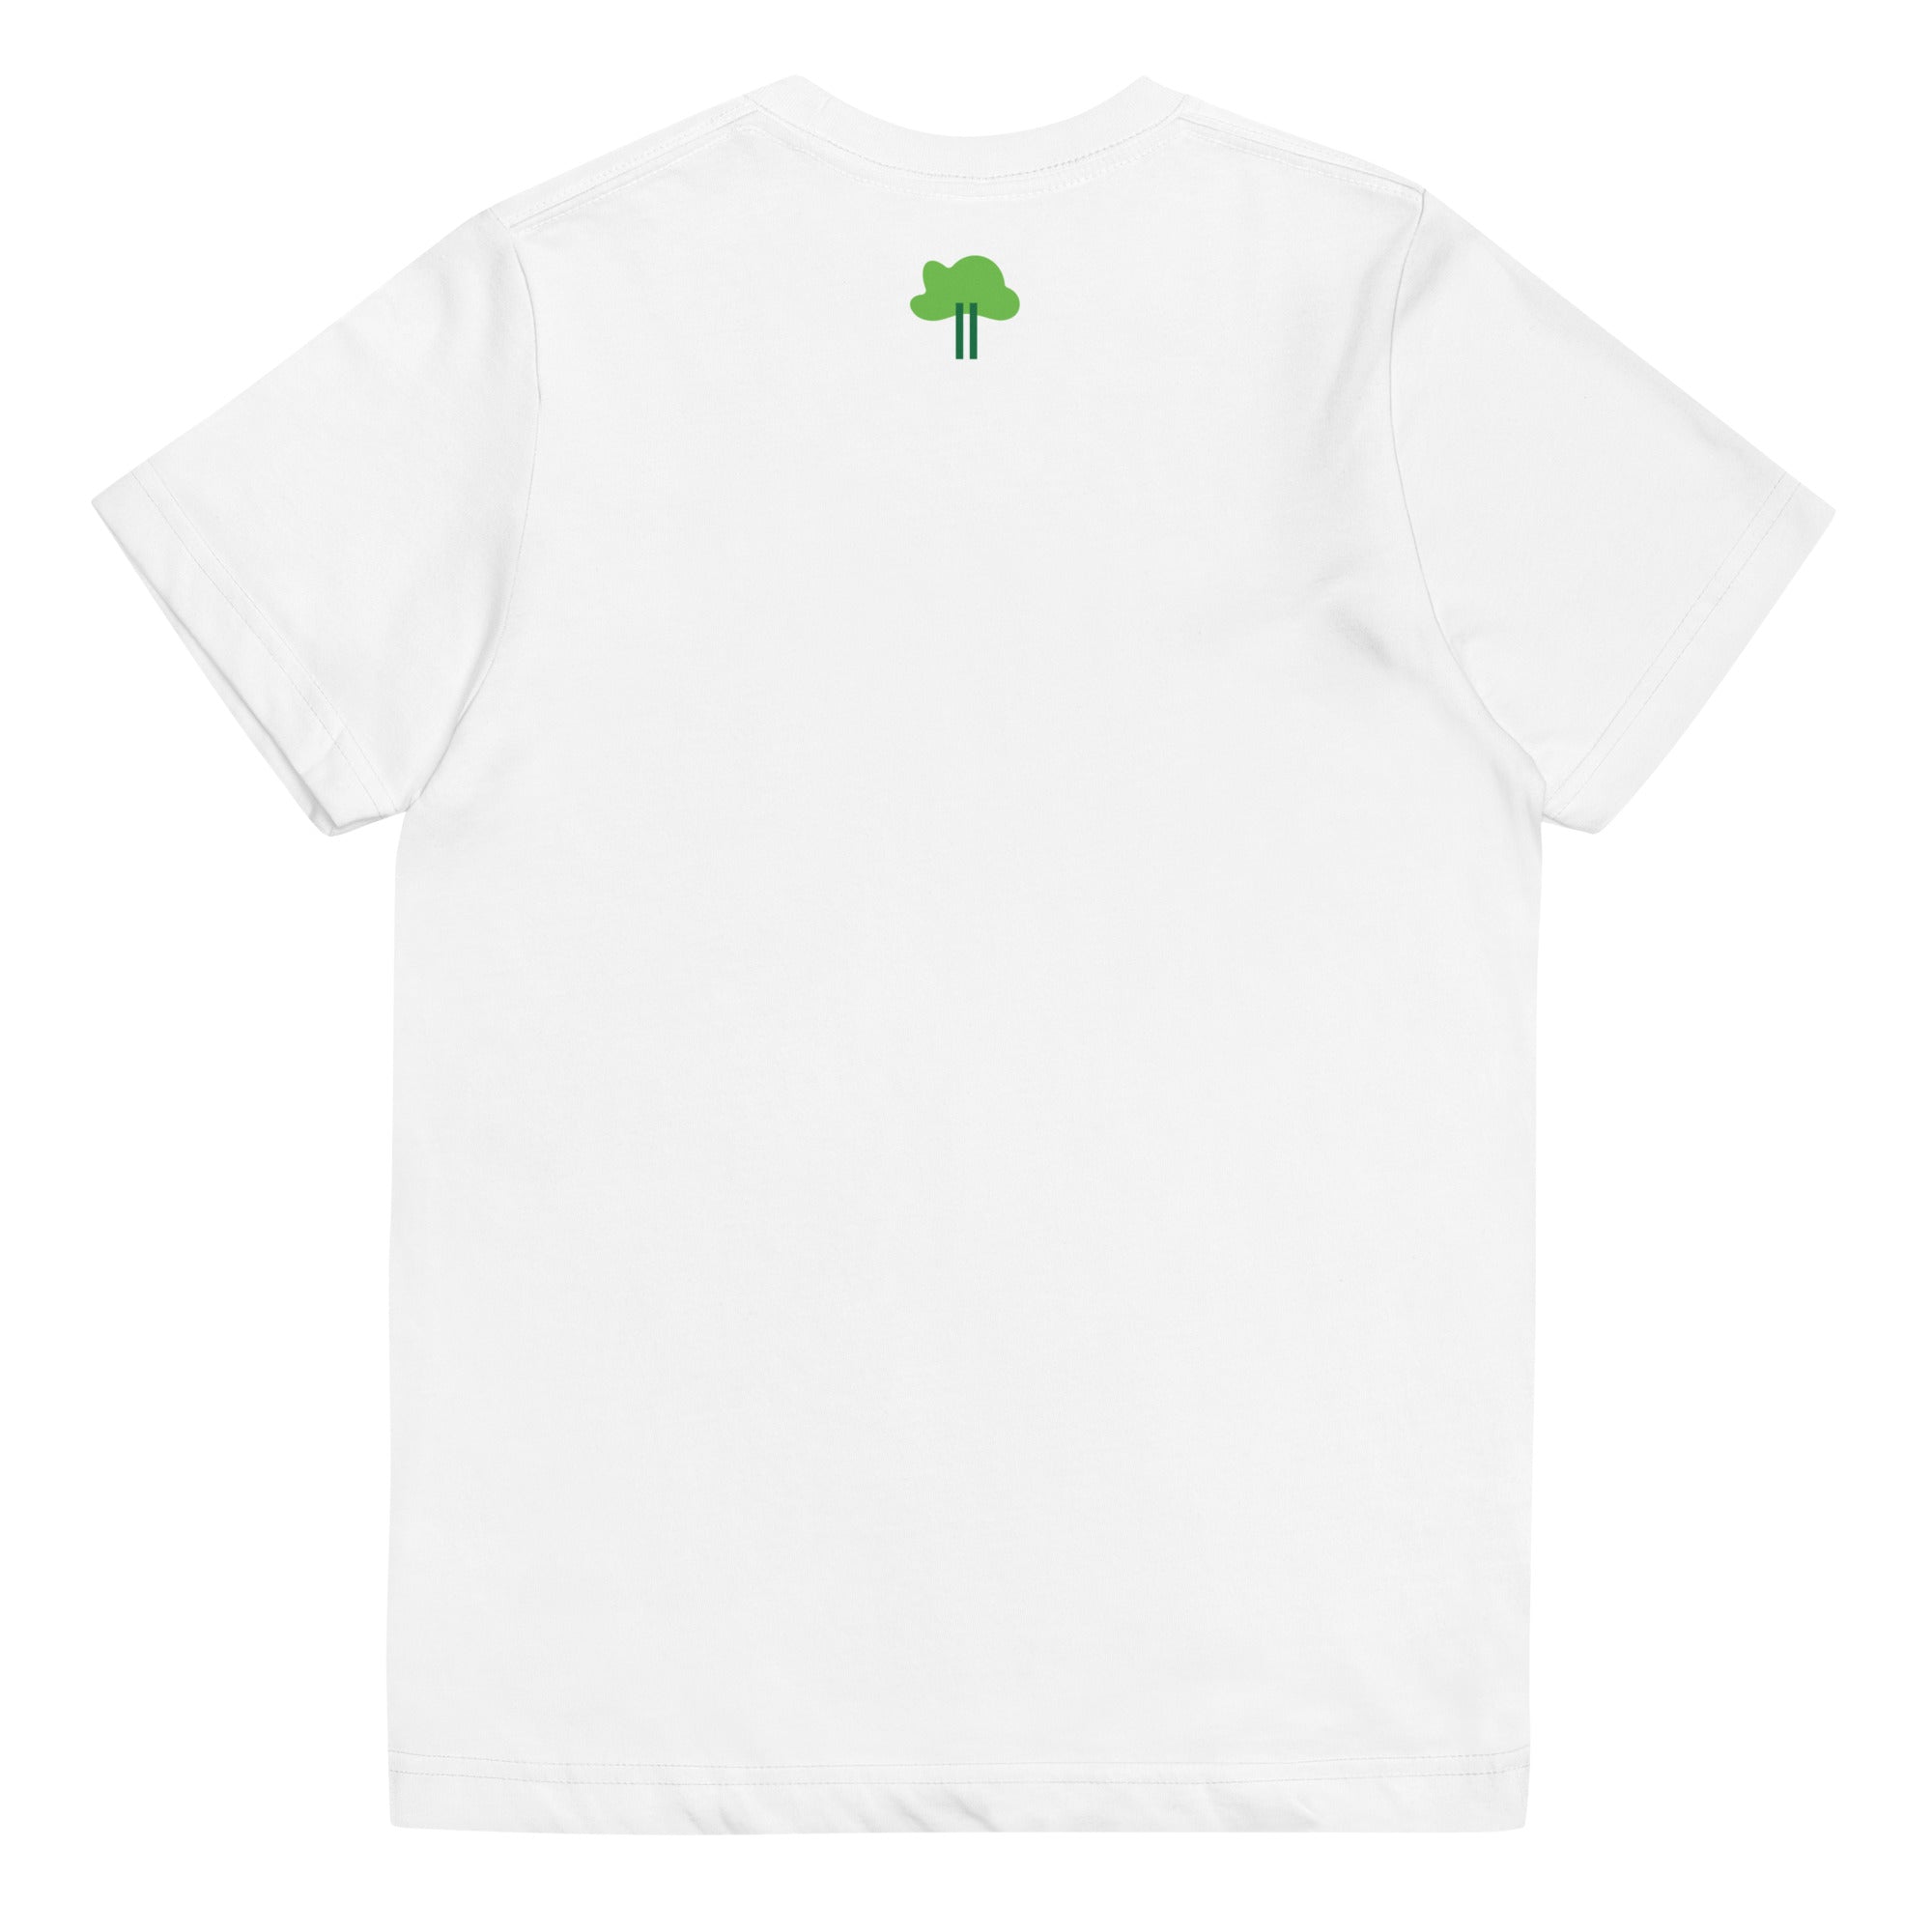 I Temp - Sabana - K9 | Youth jersey t-shirt